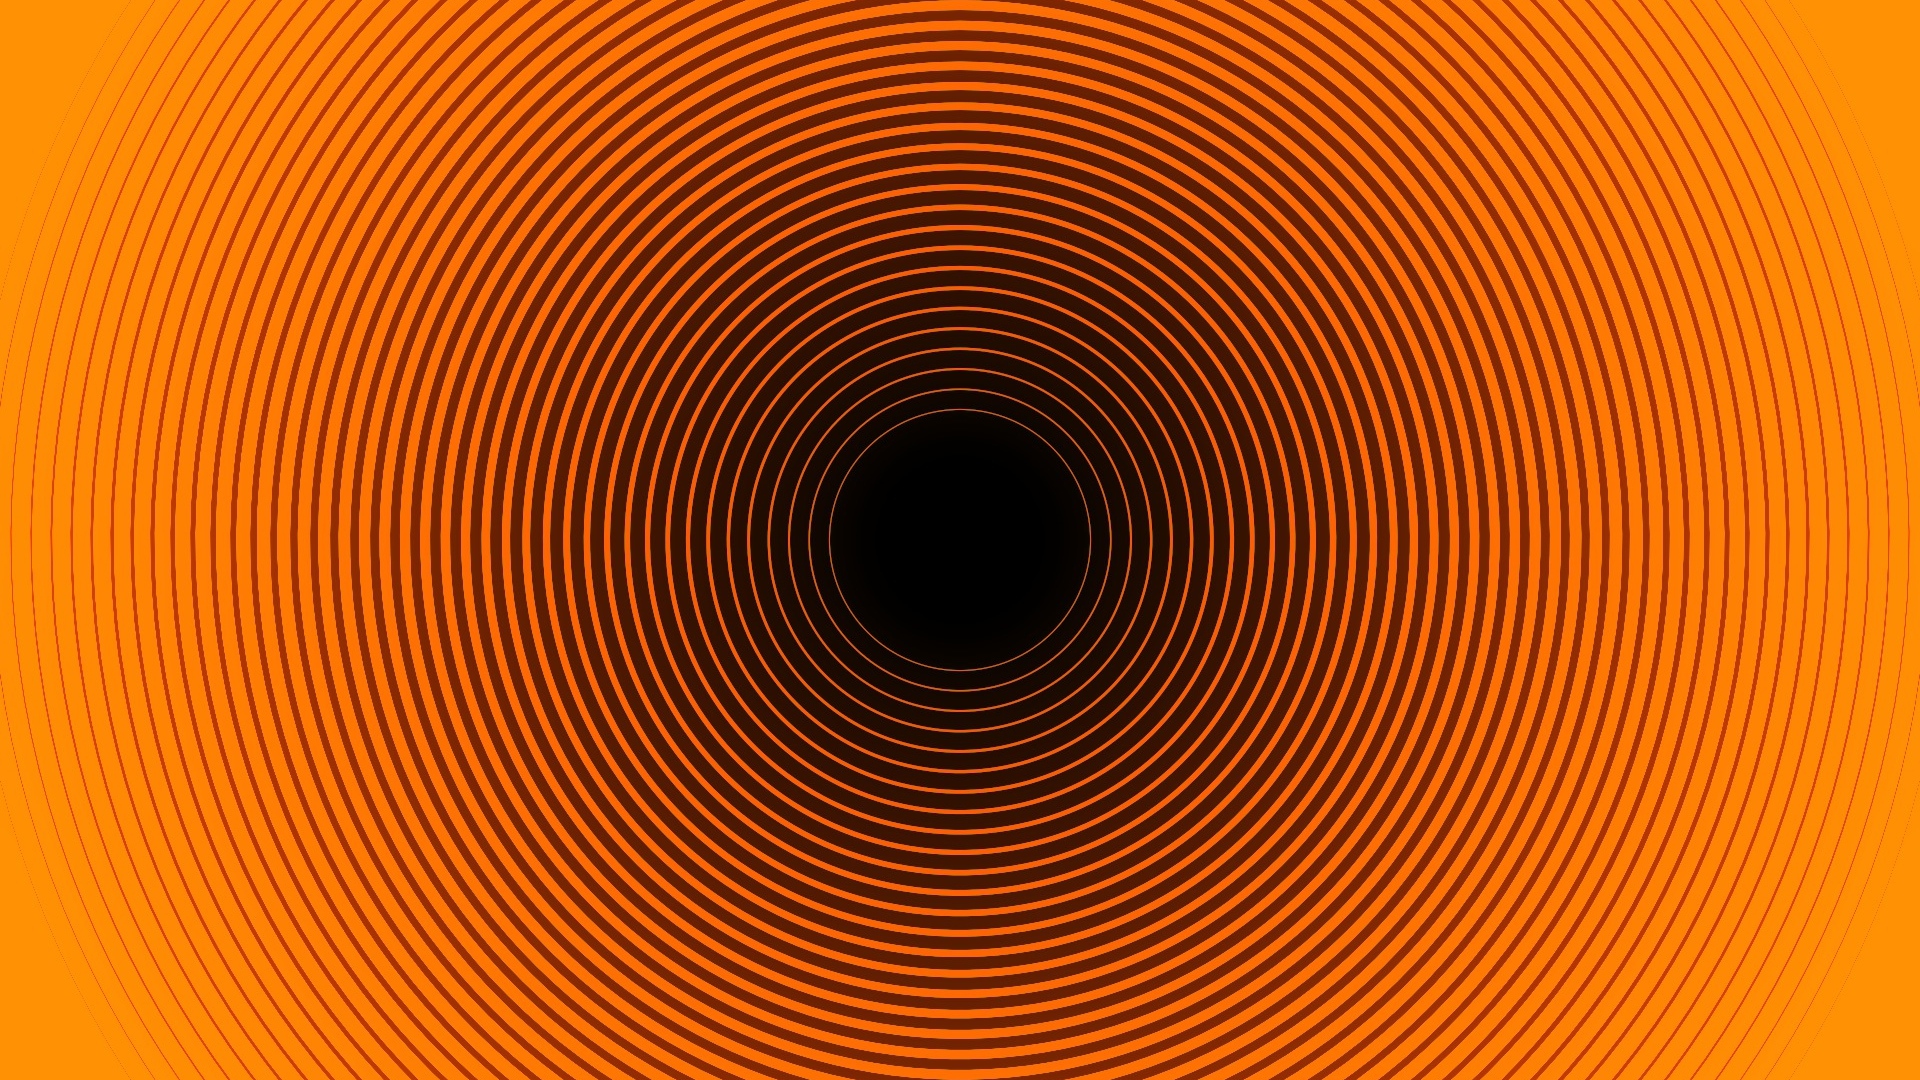 illusione ottica wallpaper hd,arancia,giallo,cerchio,ambra,linea